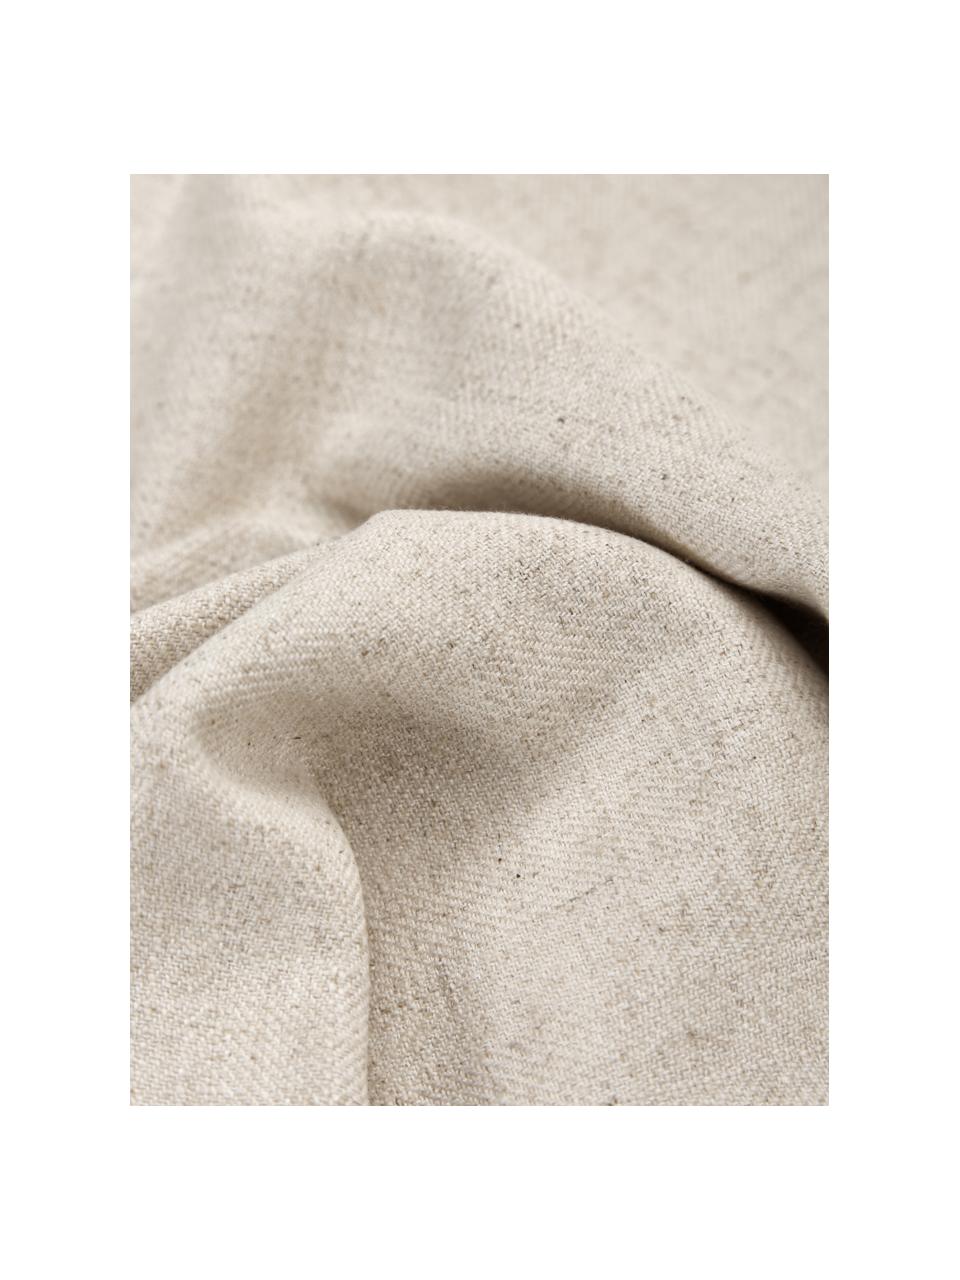 Kissenhülle Blanche mit Holzknöpfen, 60% Polyester, 25% Baumwolle, 15% Leinen, Beige, B 45 x L 45 cm